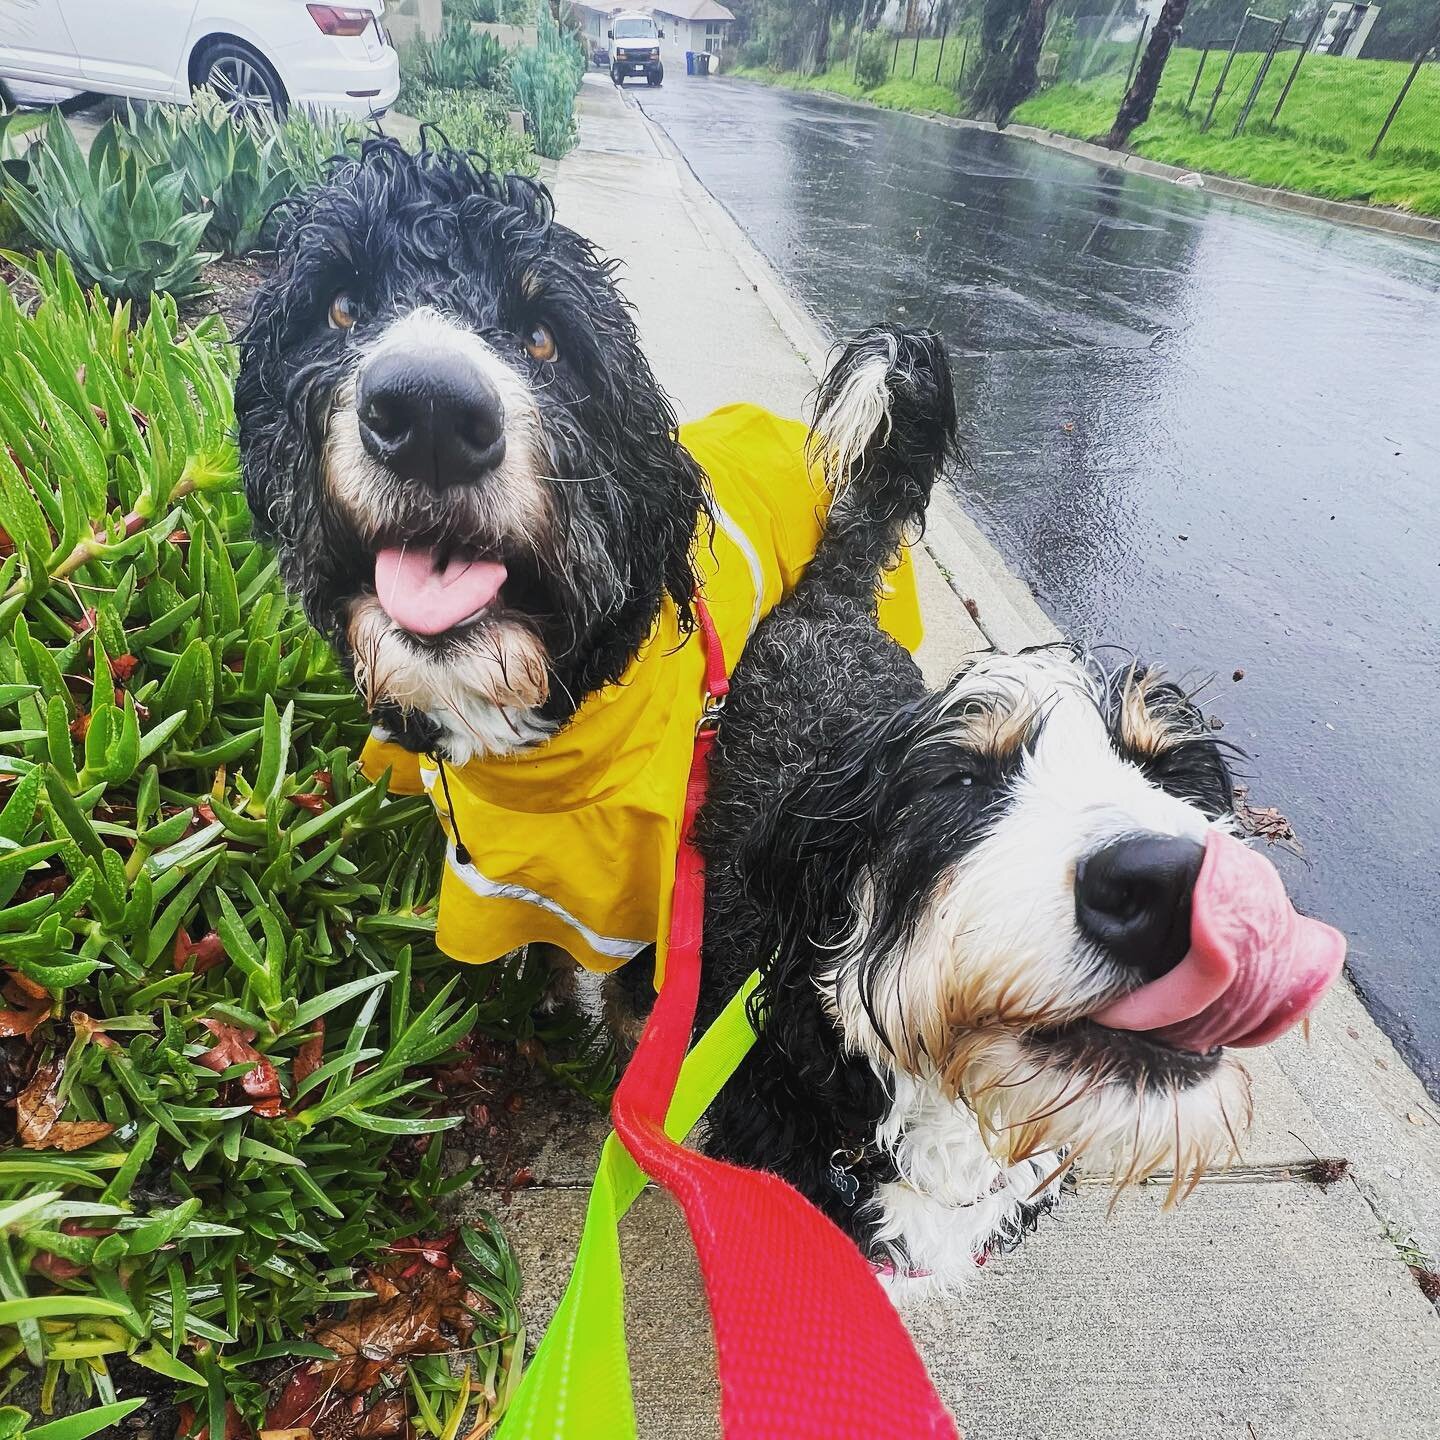 And best rainy day pic award goes to 🥁&hellip; Oliver and Coco!!!! ☔️😂 #rainydayinlosangeles #barksandrecla #rainorshine 
.
.
.
#bernedoodle #bernedoodlesofinstagram #rainyday #dogdays #rainraingoaway #dogsinraincoats #wetdogwednesday #wetdog #happ